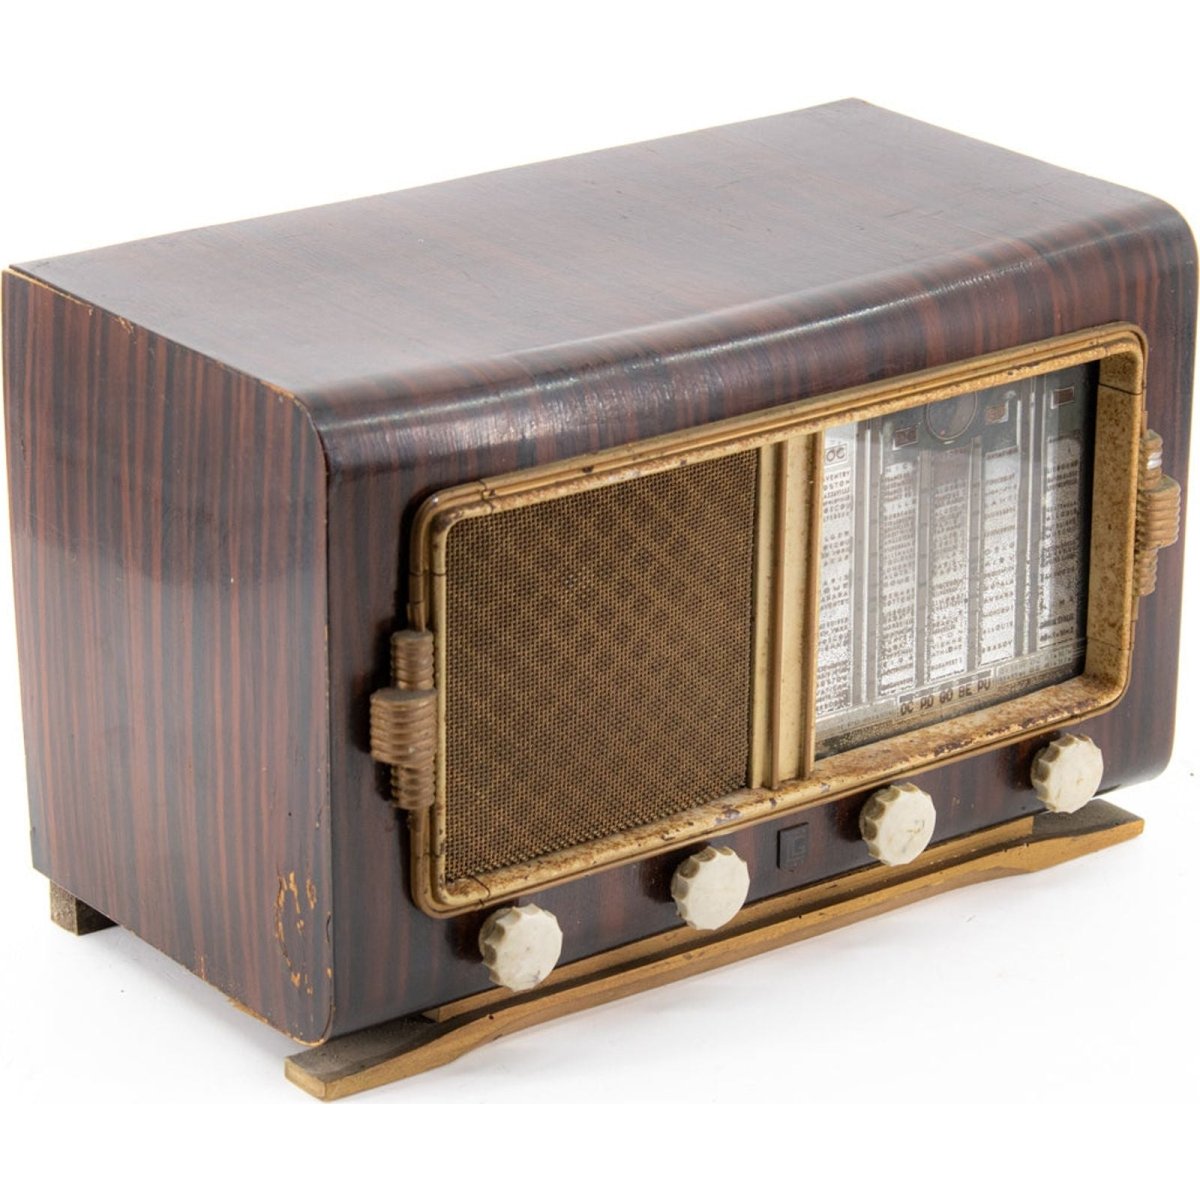 Radio Bluetooth LG Paris Vintage 50’S enceinte connectée française haut de gamme absolument prodige radio vintage